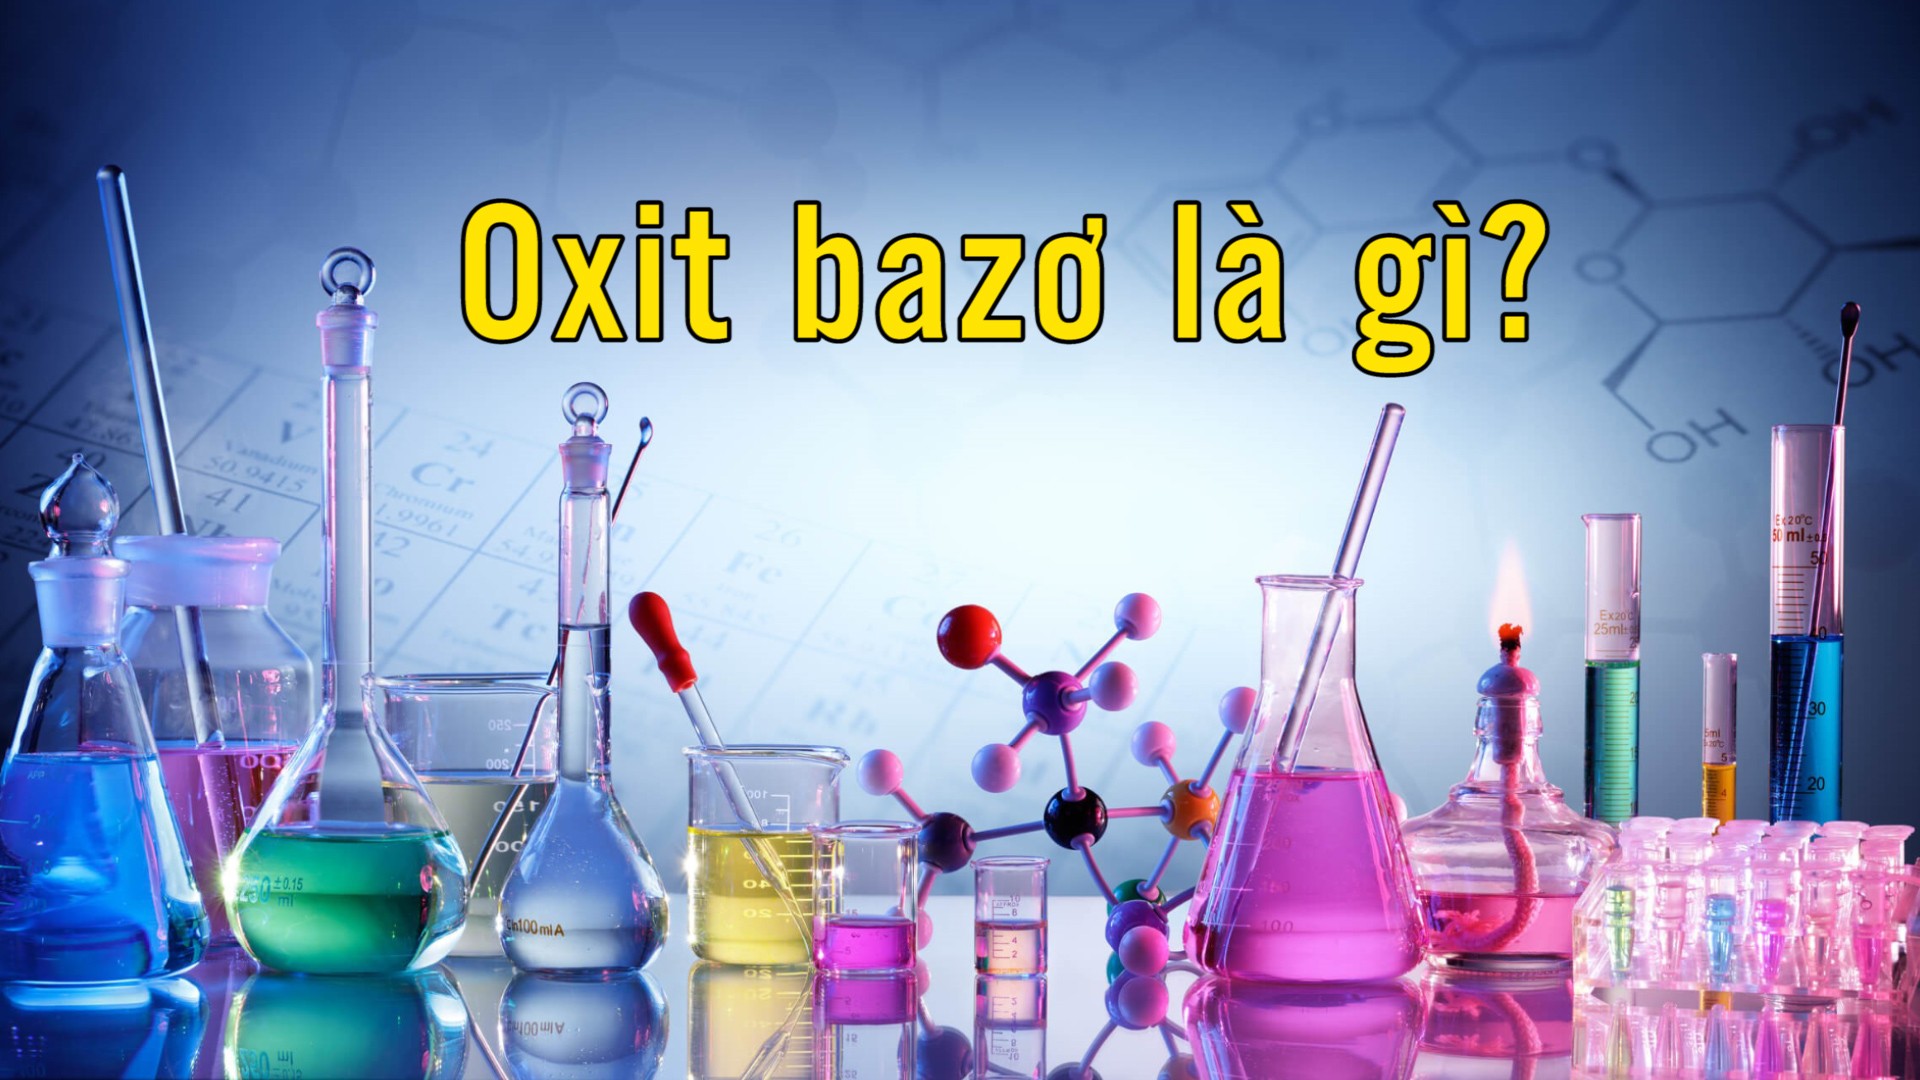 Tìm hiểu về các oxit bazo để hiểu rõ hơn về tính chất hóa học